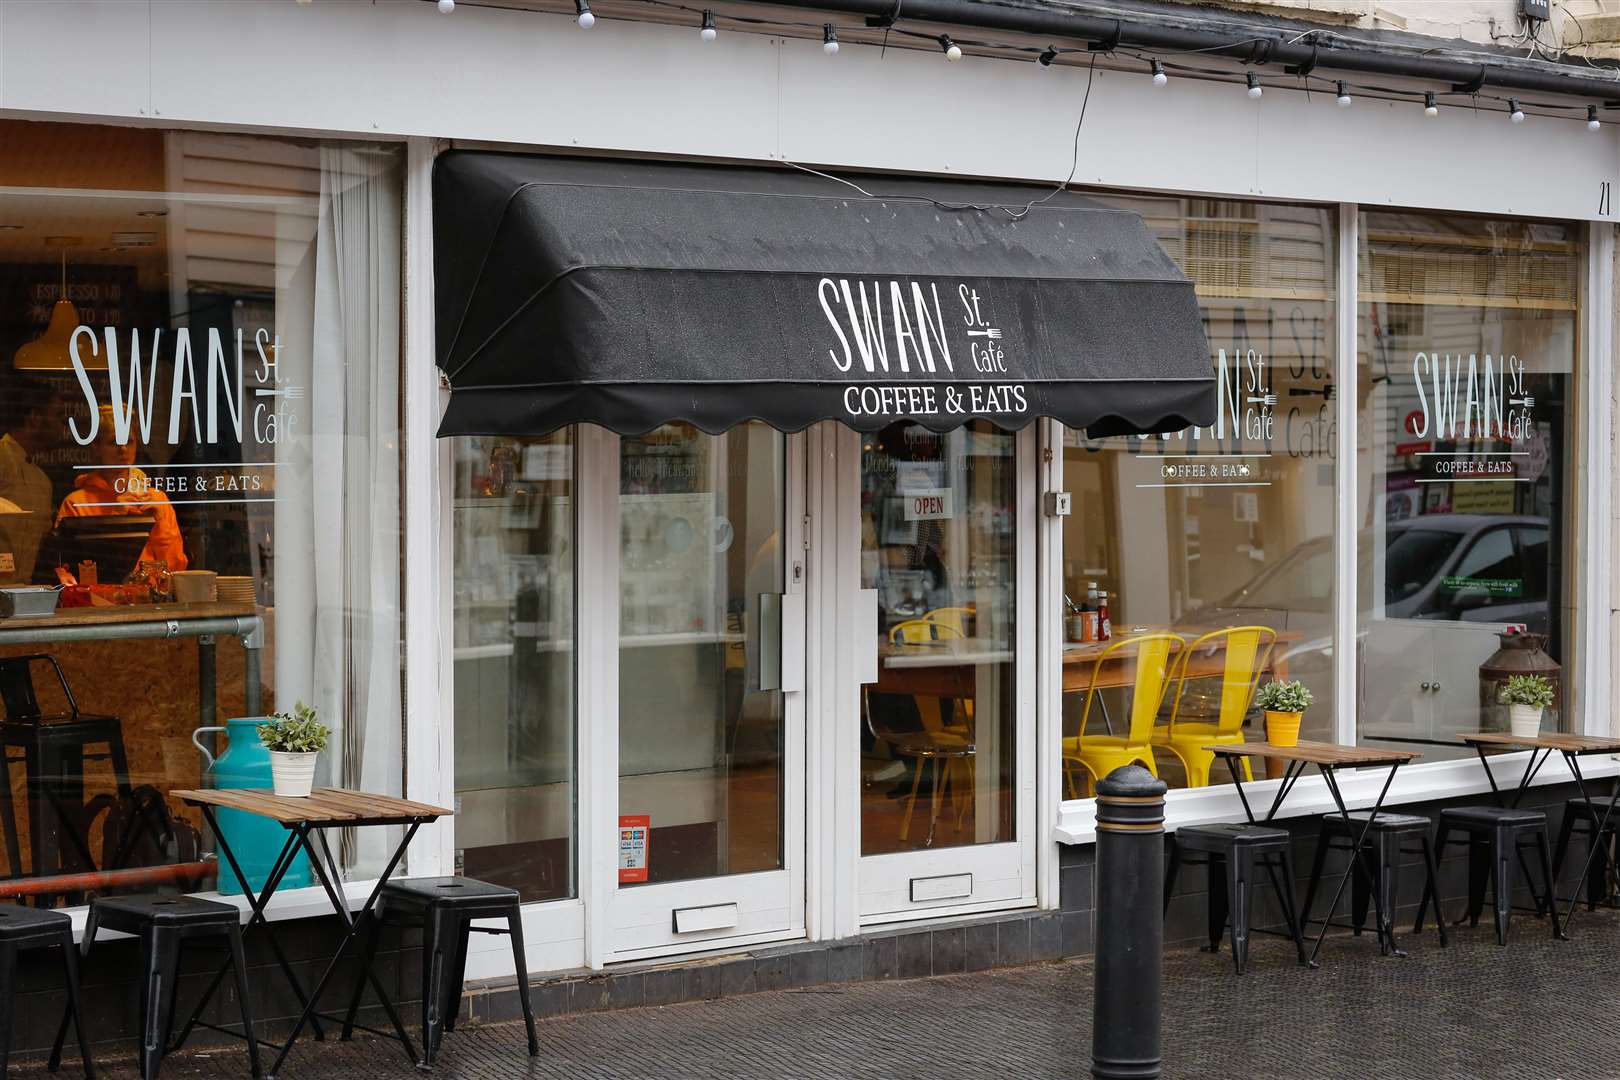 Swan Street Cafe in West Malling